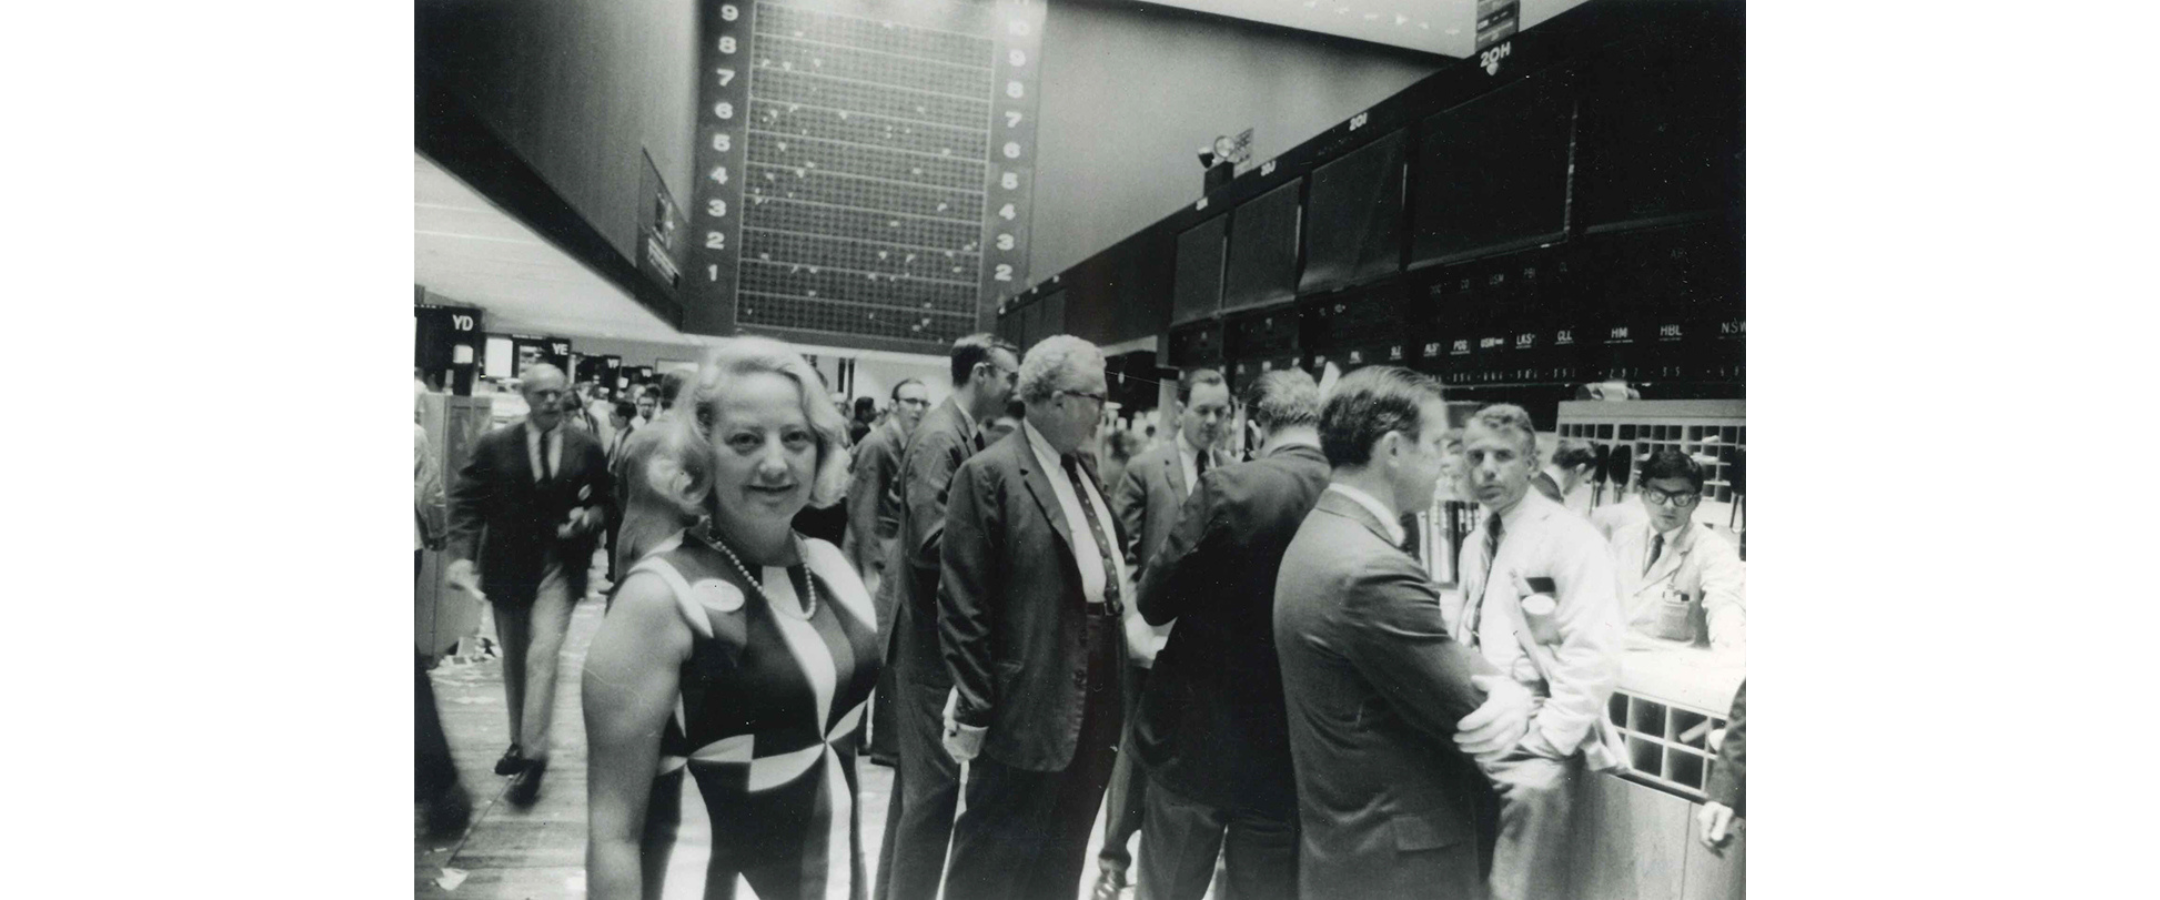 Muriel Siebert at the New York Stock Exchange, 1960s.